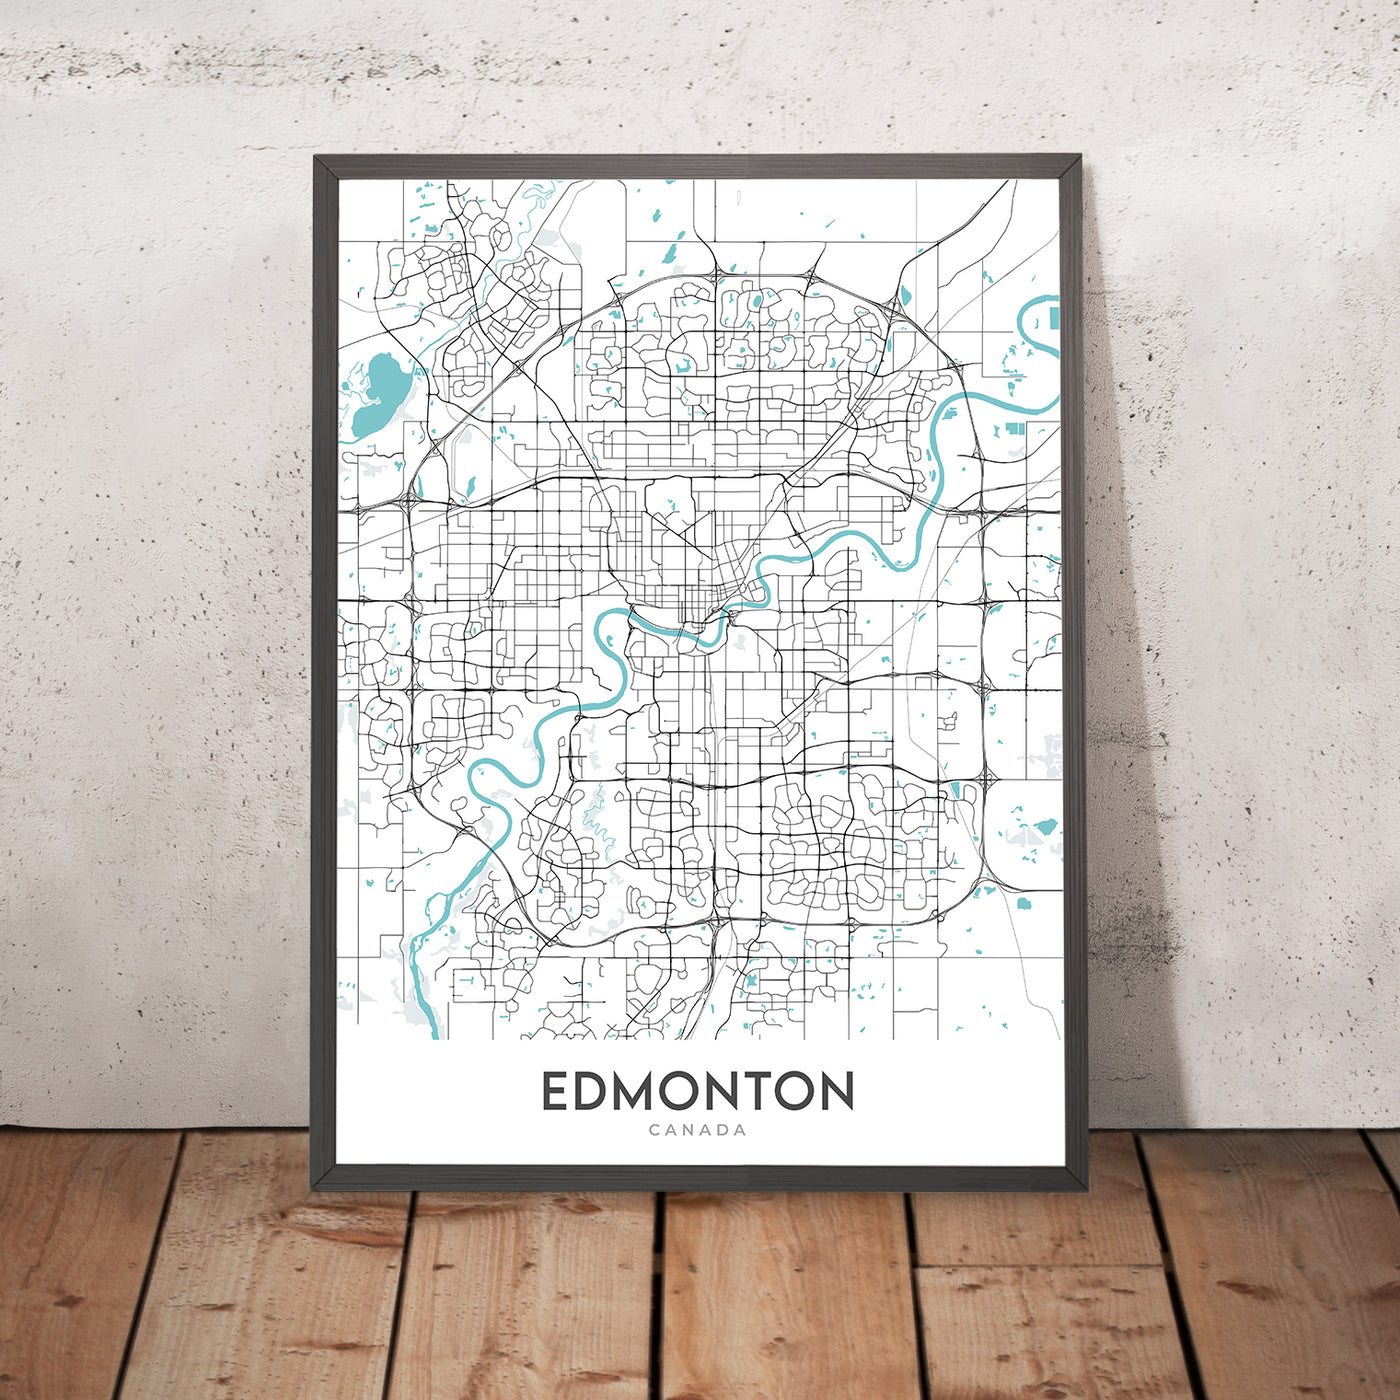 Mapa moderno de la ciudad de Edmonton, Canadá: centro, Universidad de Alberta, West Edmonton Mall, Whyte Avenue, Jasper Avenue